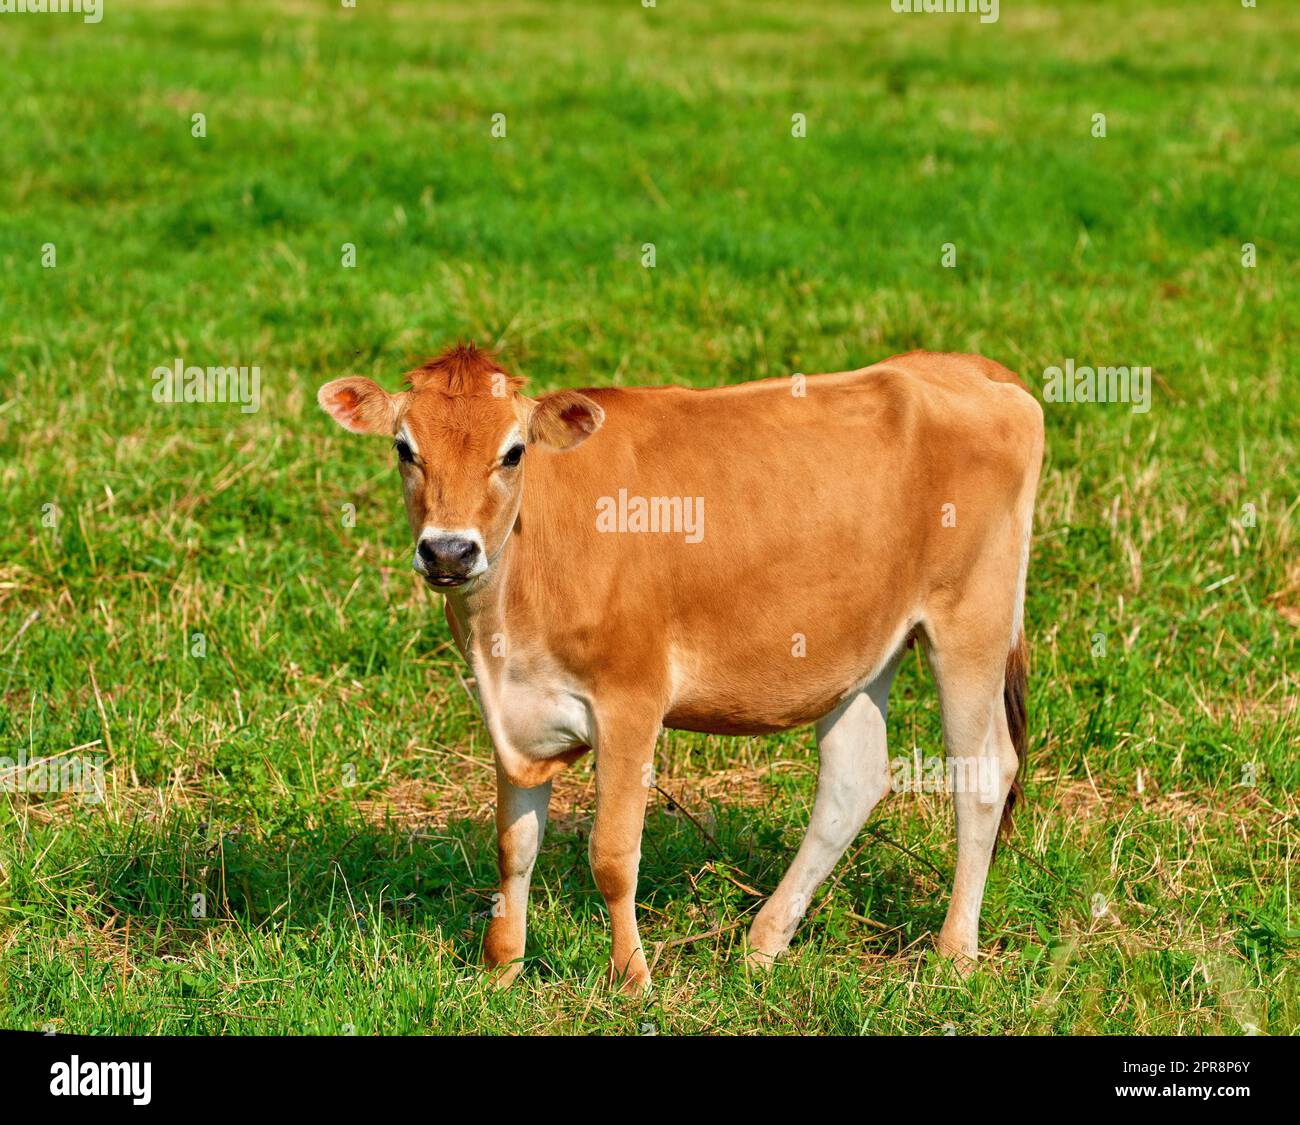 Ritratto di una mucca bruna che pascolava su verdi terreni agricoli in campagna. Bestiame o bestiame in piedi su un prato o prato erboso aperto, vuoto e isolato. Animale nel suo ambiente naturale in natura Foto Stock